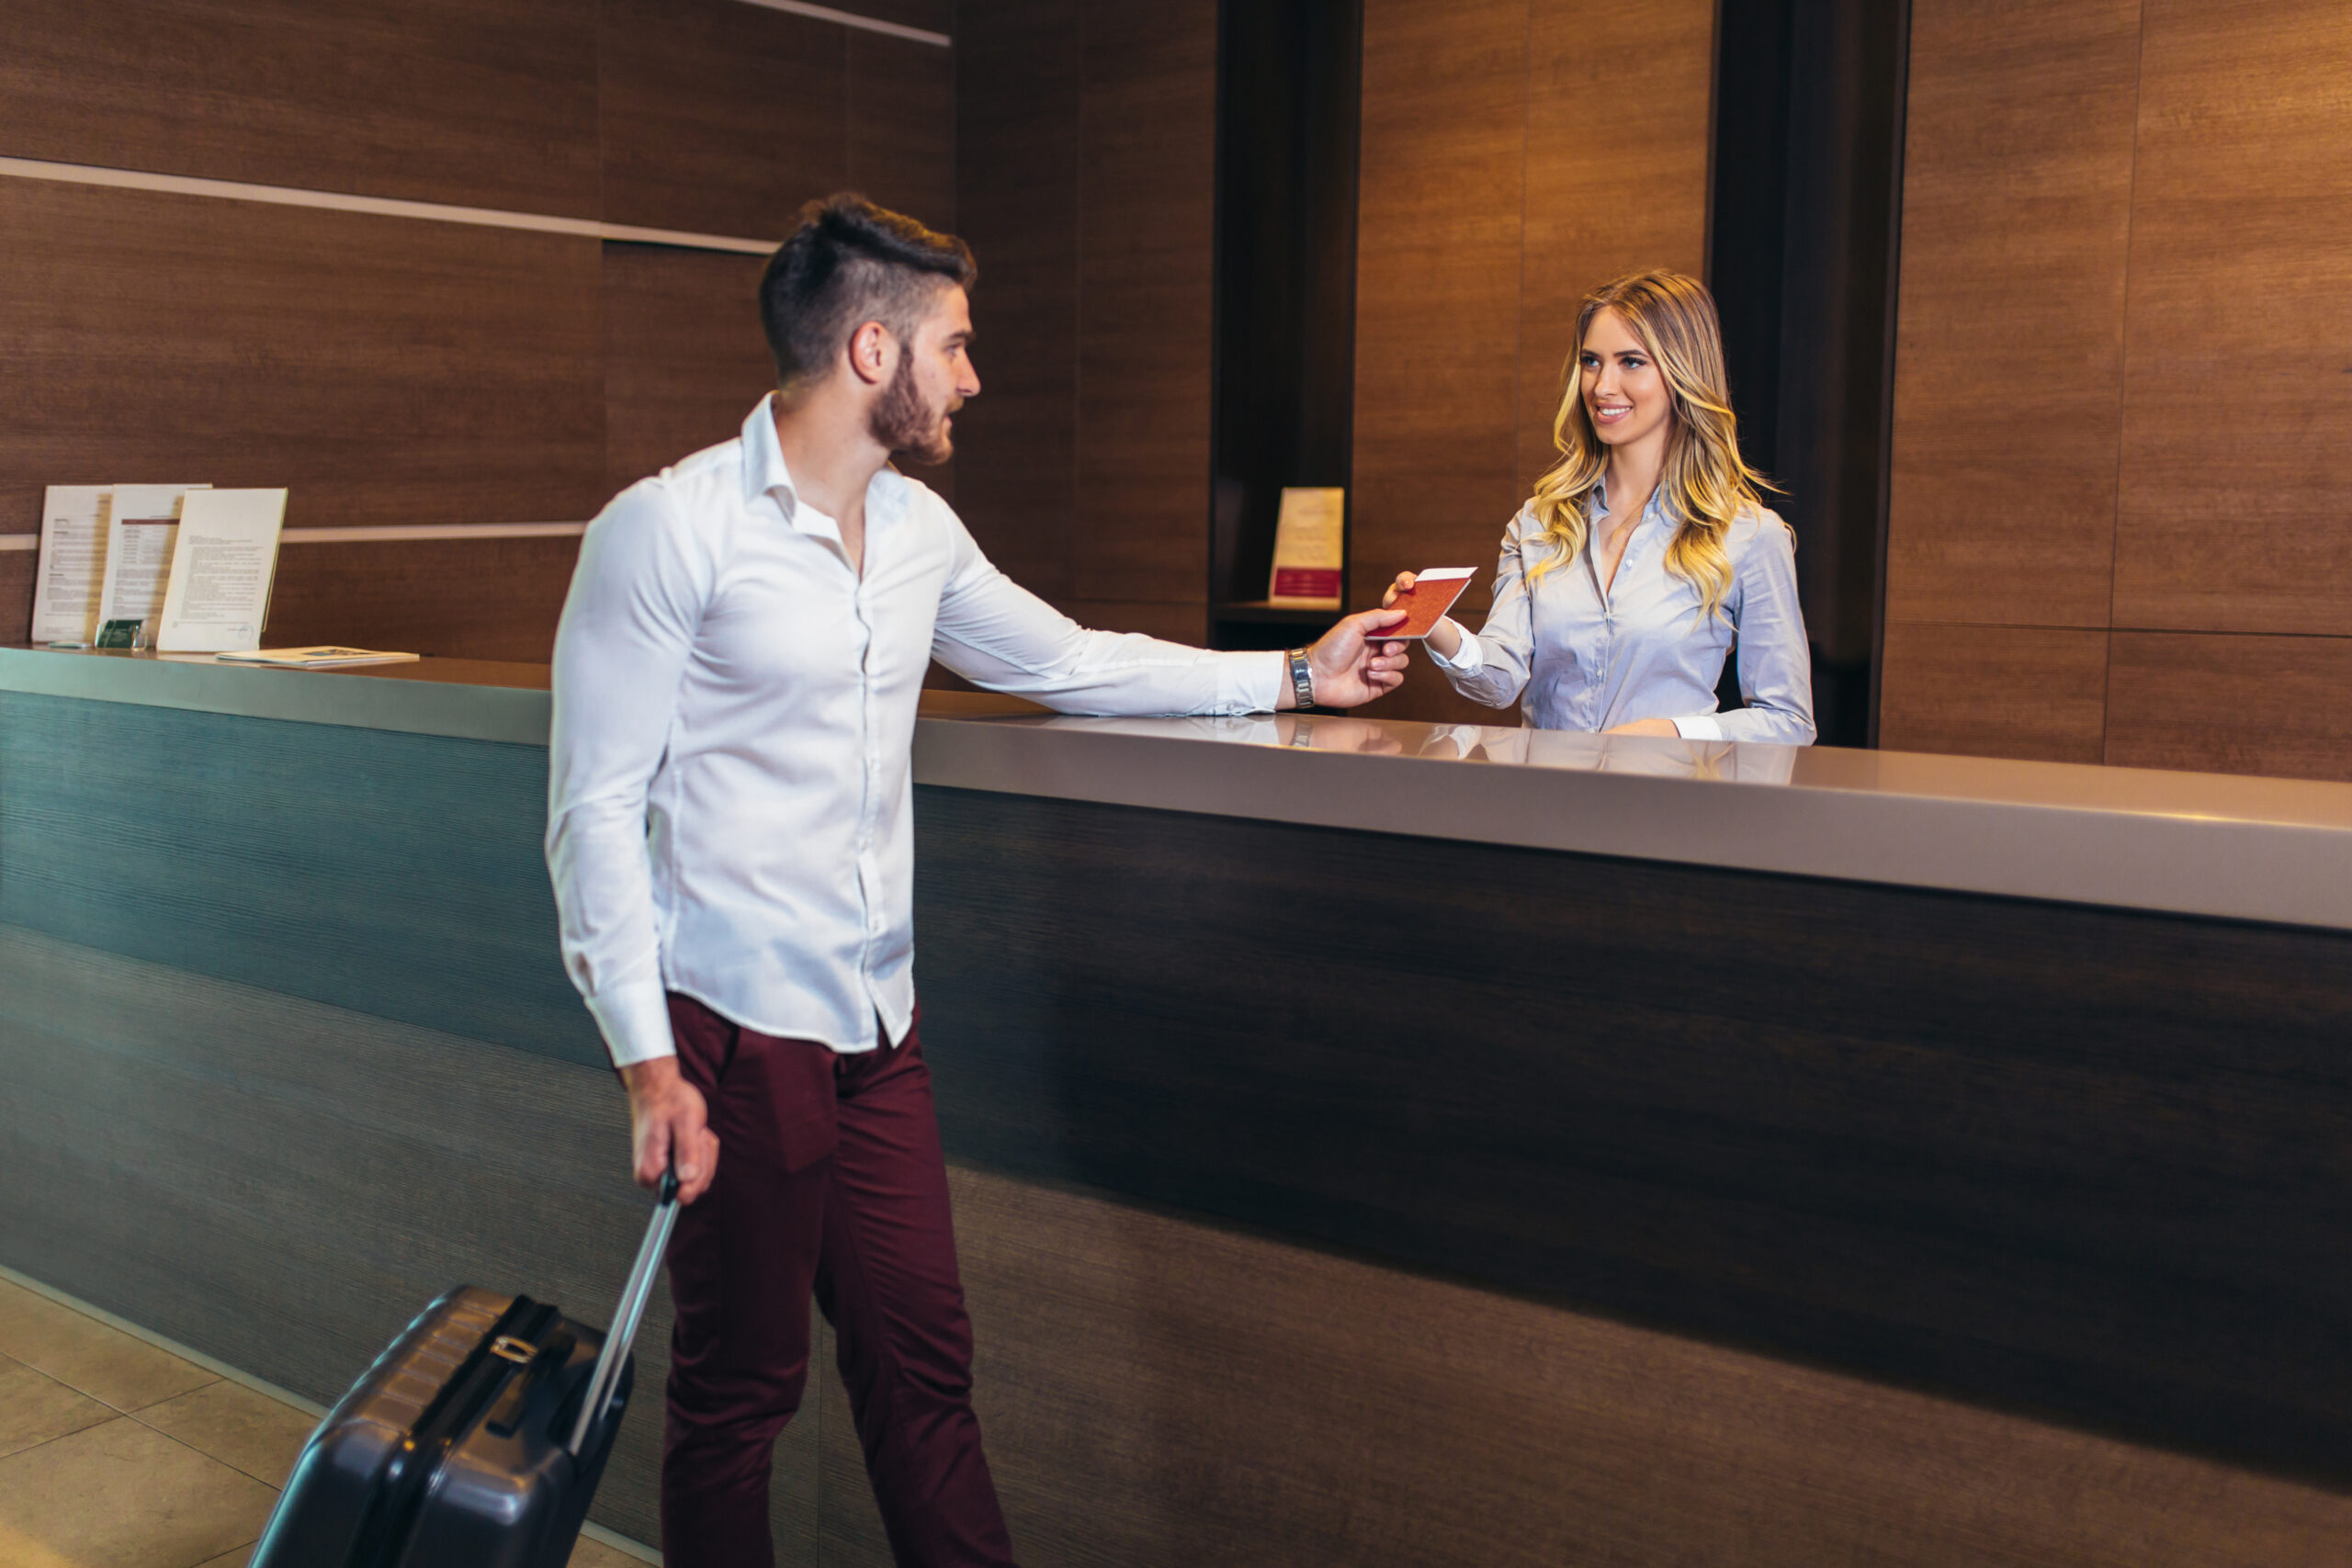 Obsługa hotelowa korzysta ze specjalnego systemu obsługi gości